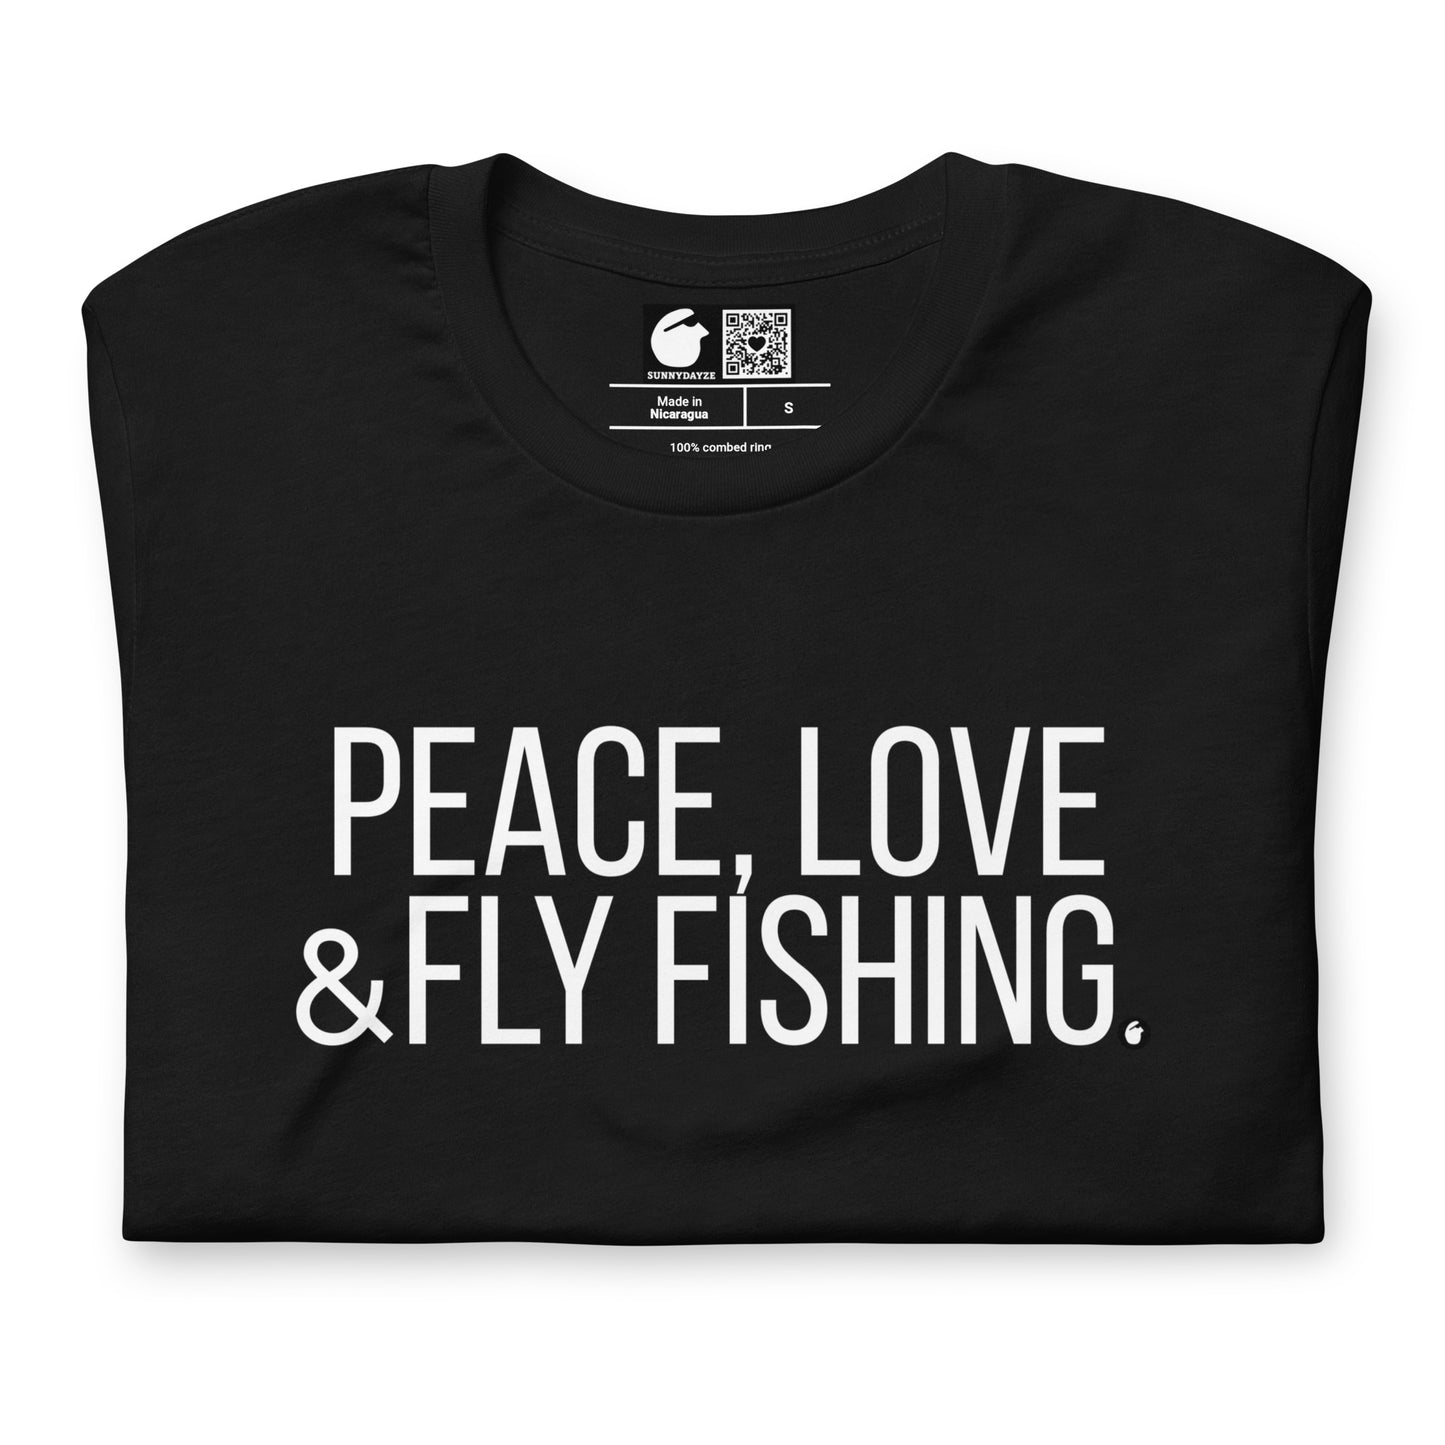 FLY FISHING Short-Sleeve Unisex t-shirt